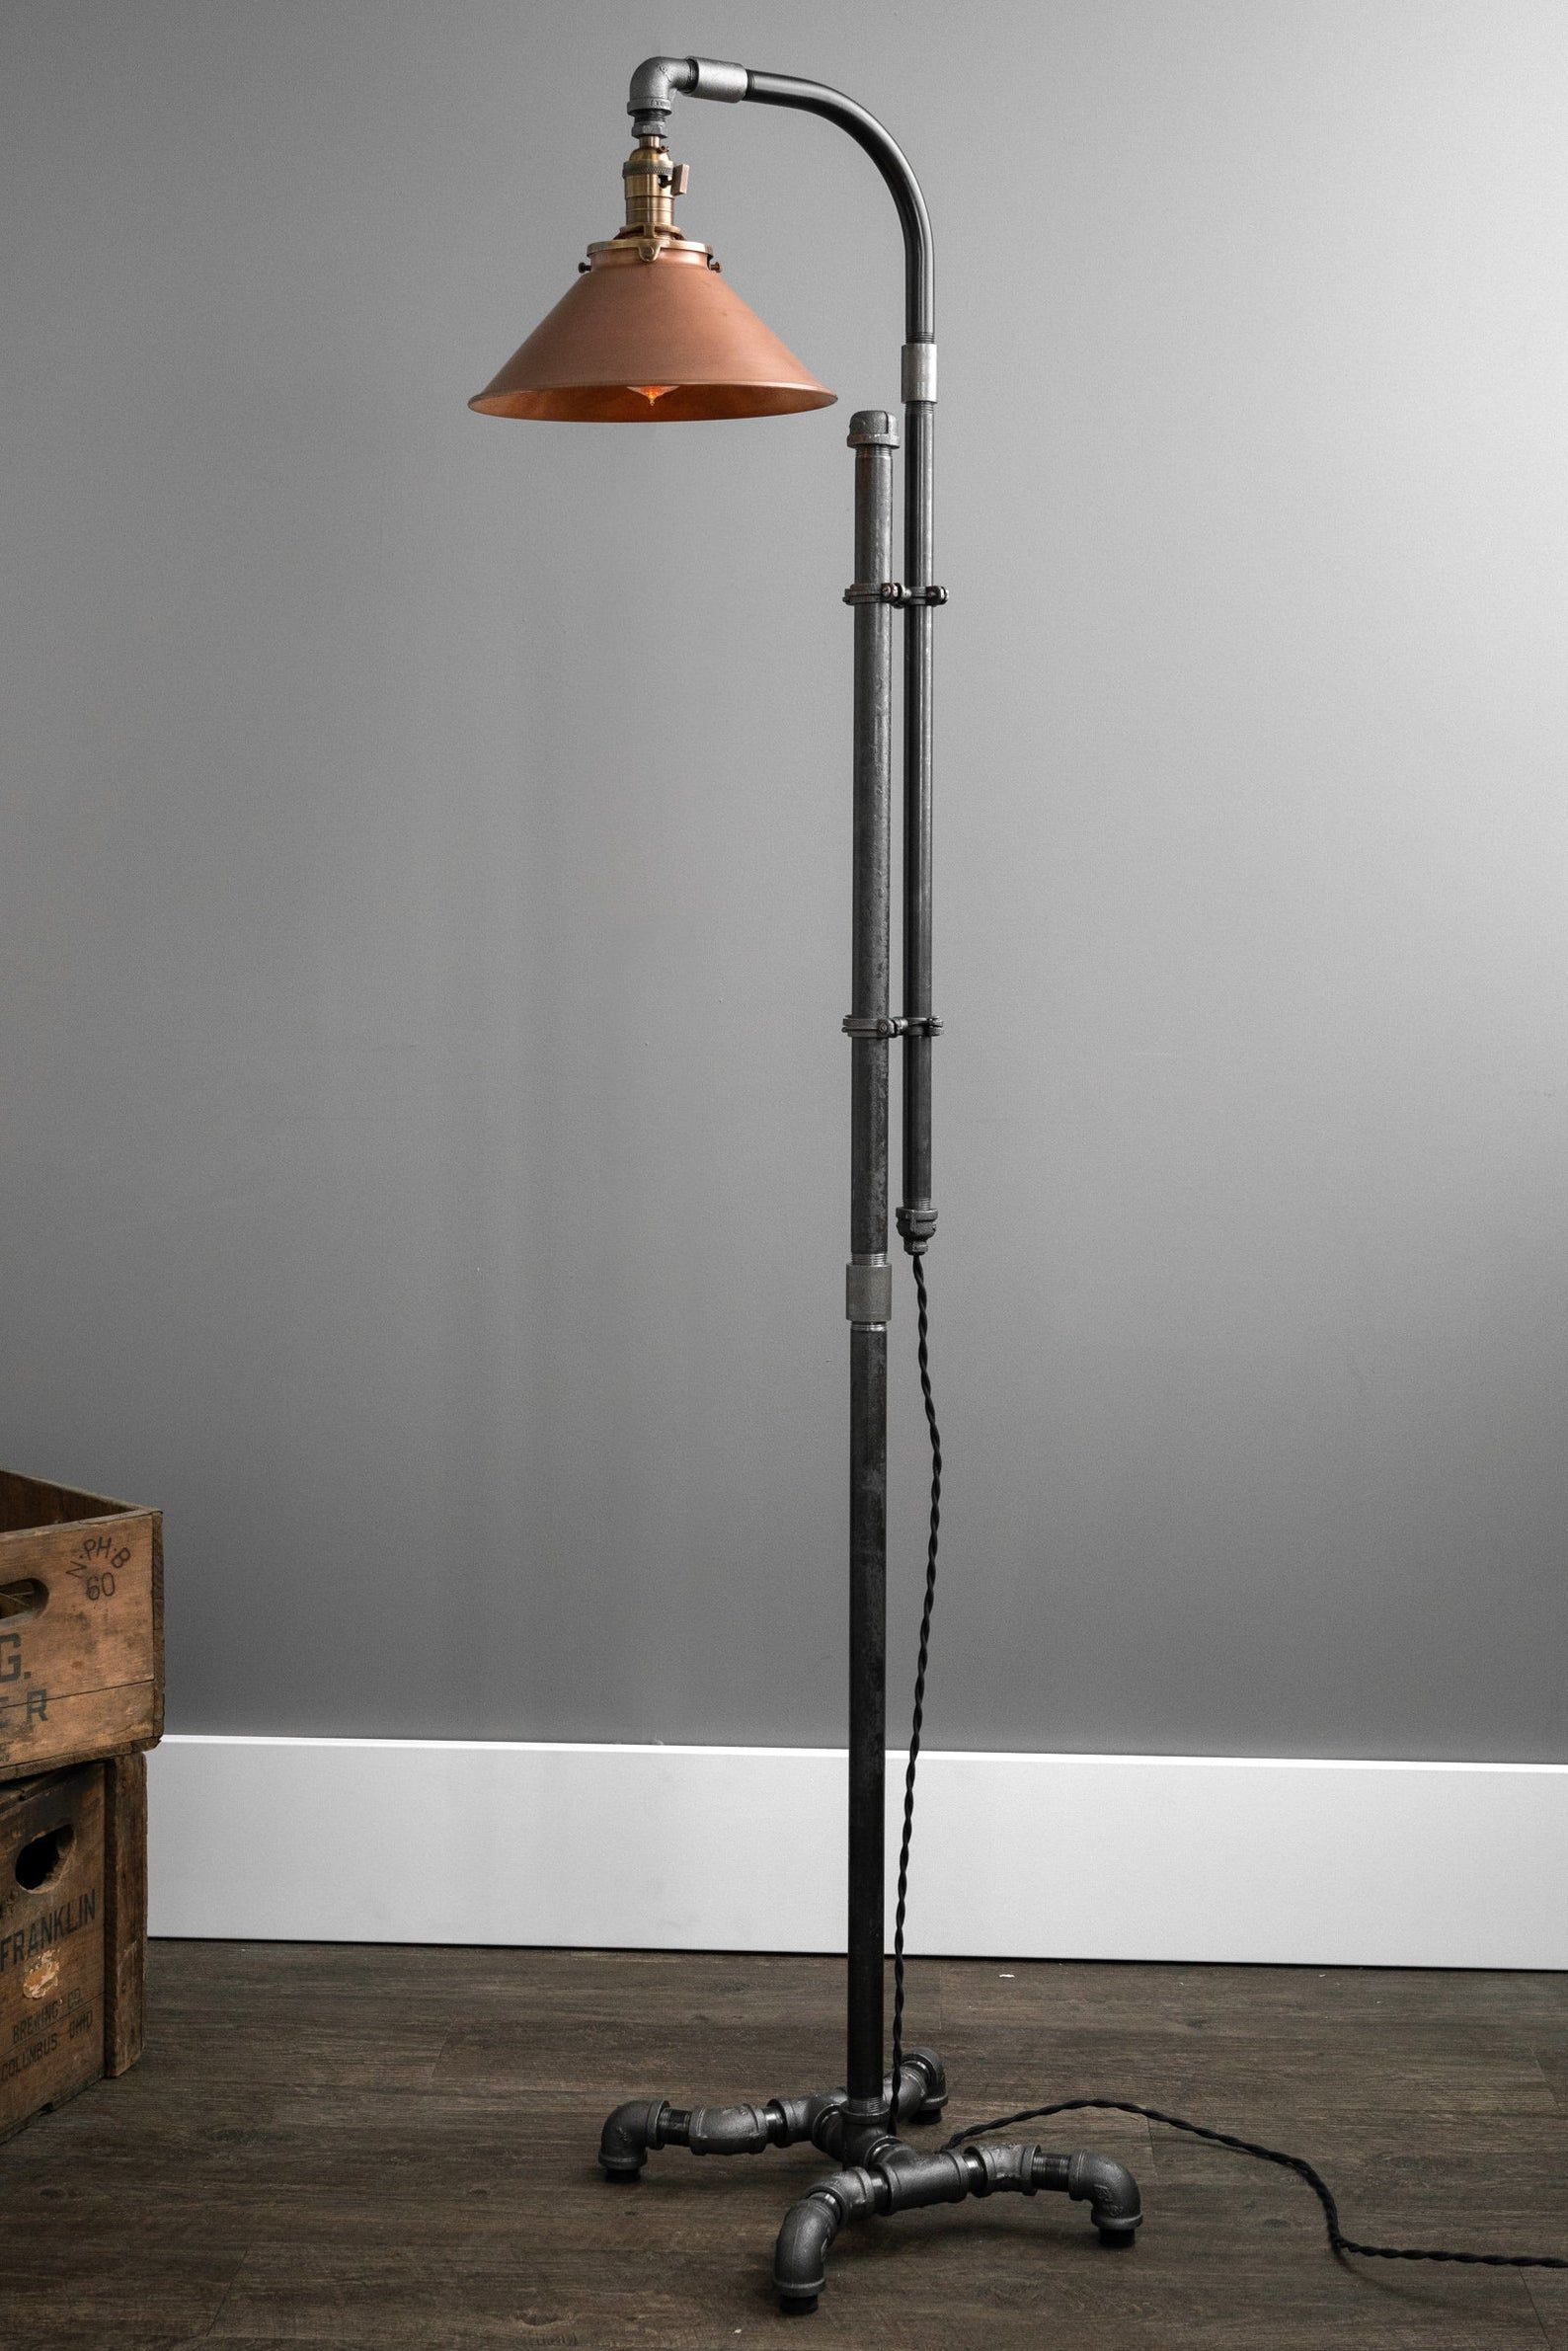 Industrial Floor Lamp Copper Shade Industrial Furniture – Etsy | Diy Floor  Lamp, Copper Floor Lamp, Steampunk Floor Lamp With Regard To Industrial Floor Lamps (View 15 of 15)